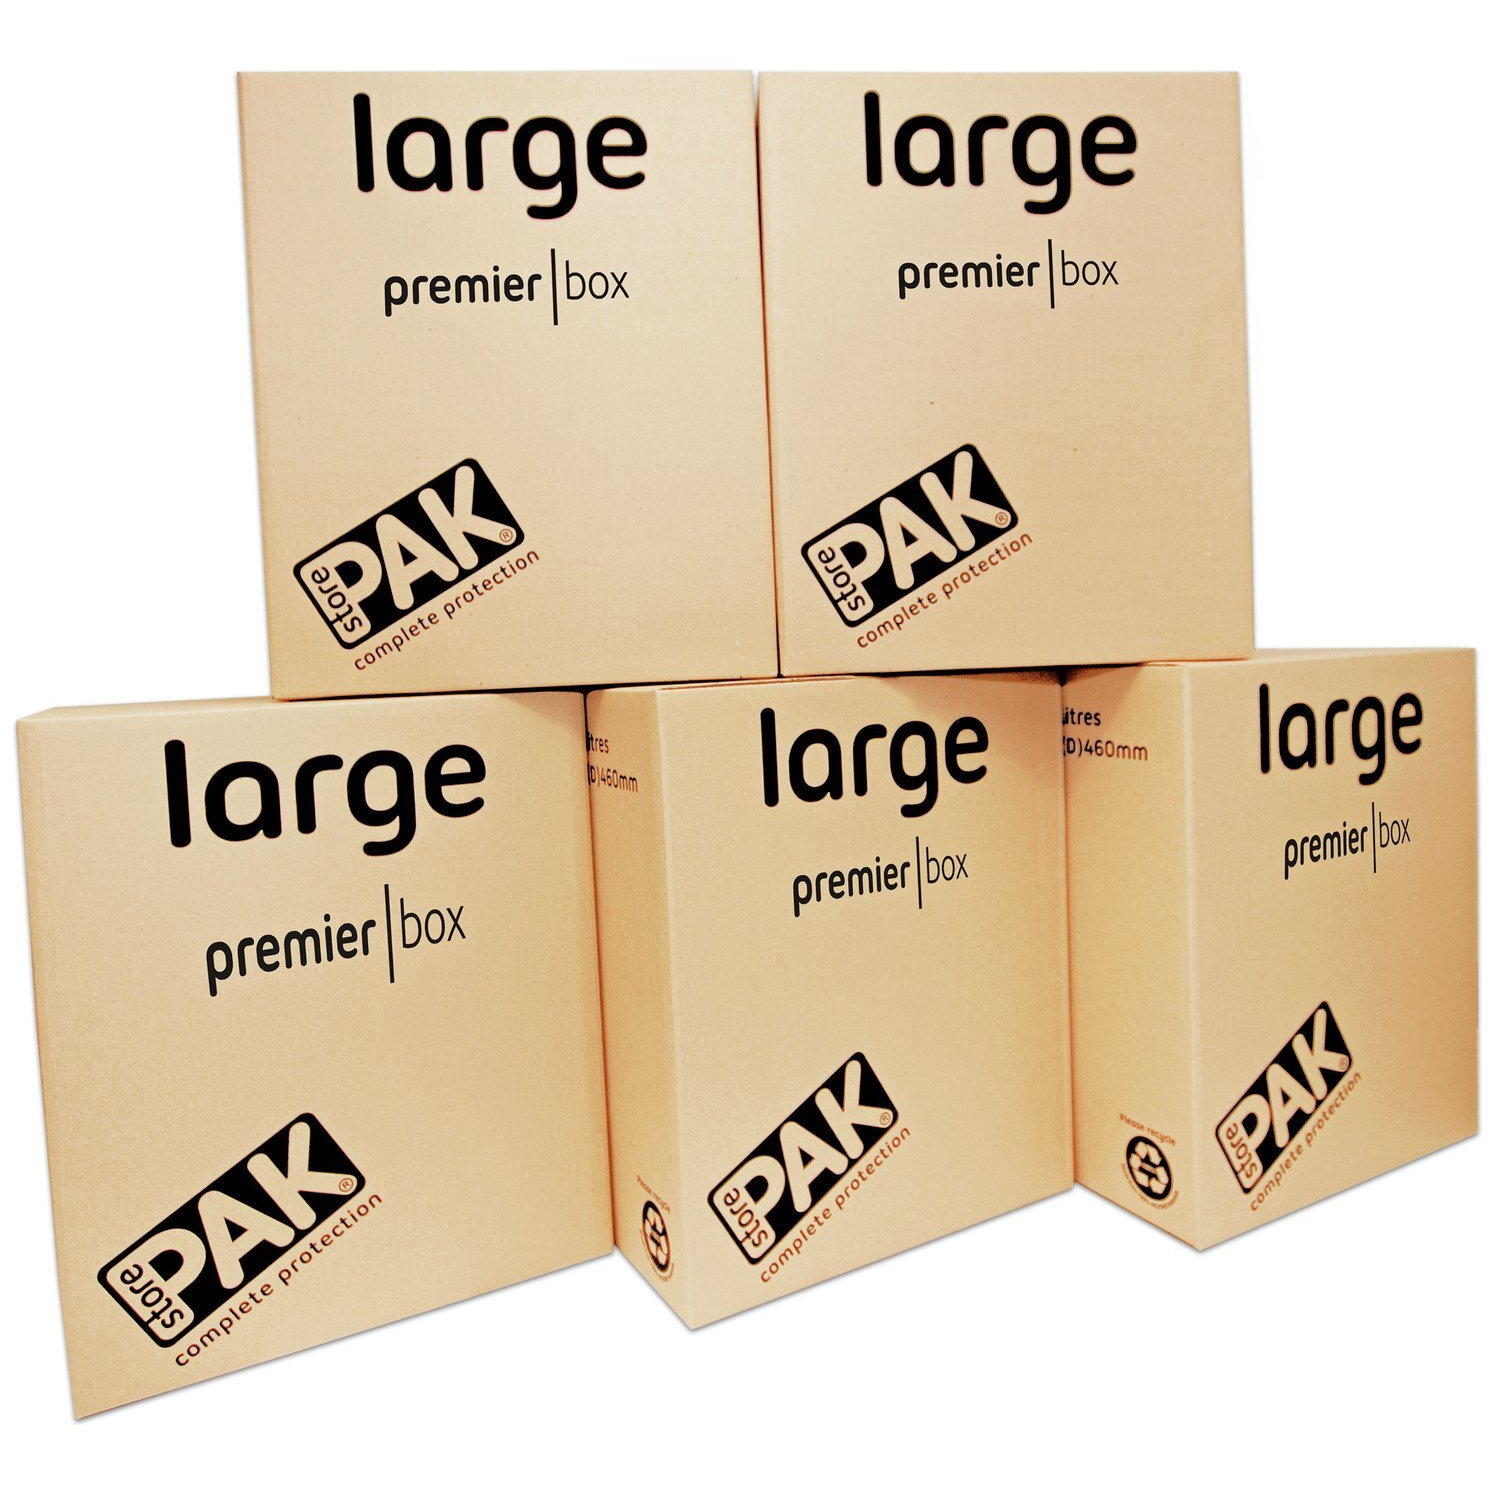 StorePAK Heavy Duty Large Cardboard Boxes - Set of 5 - image 1